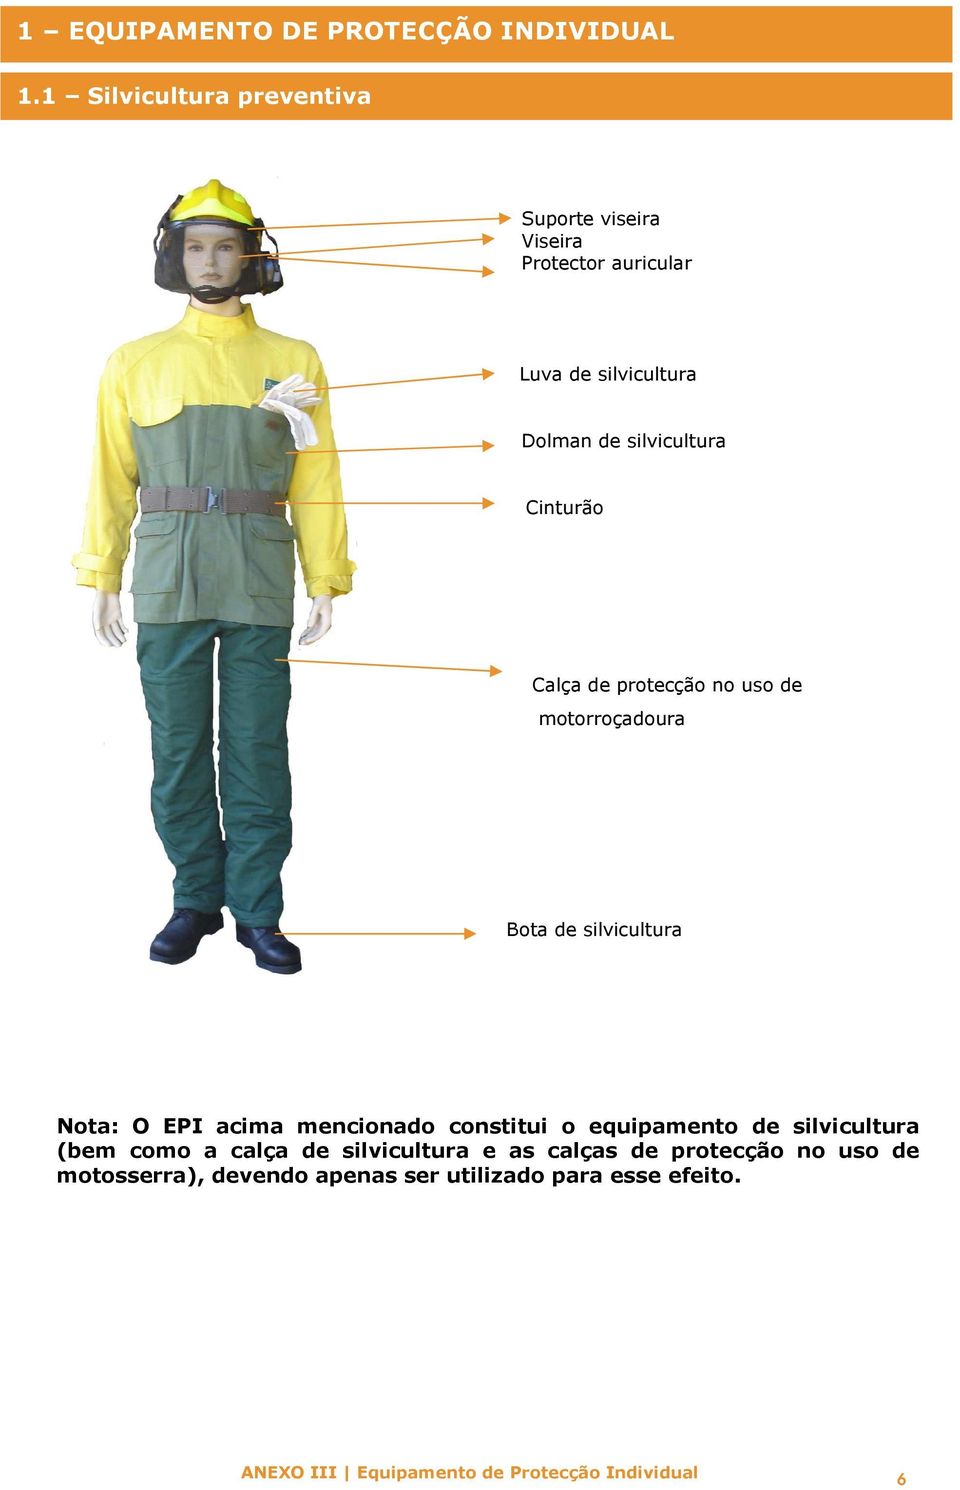 silvicultura Cinturão Calça de protecção no uso de motorroçaura Bota de silvicultura Nota: O EPI